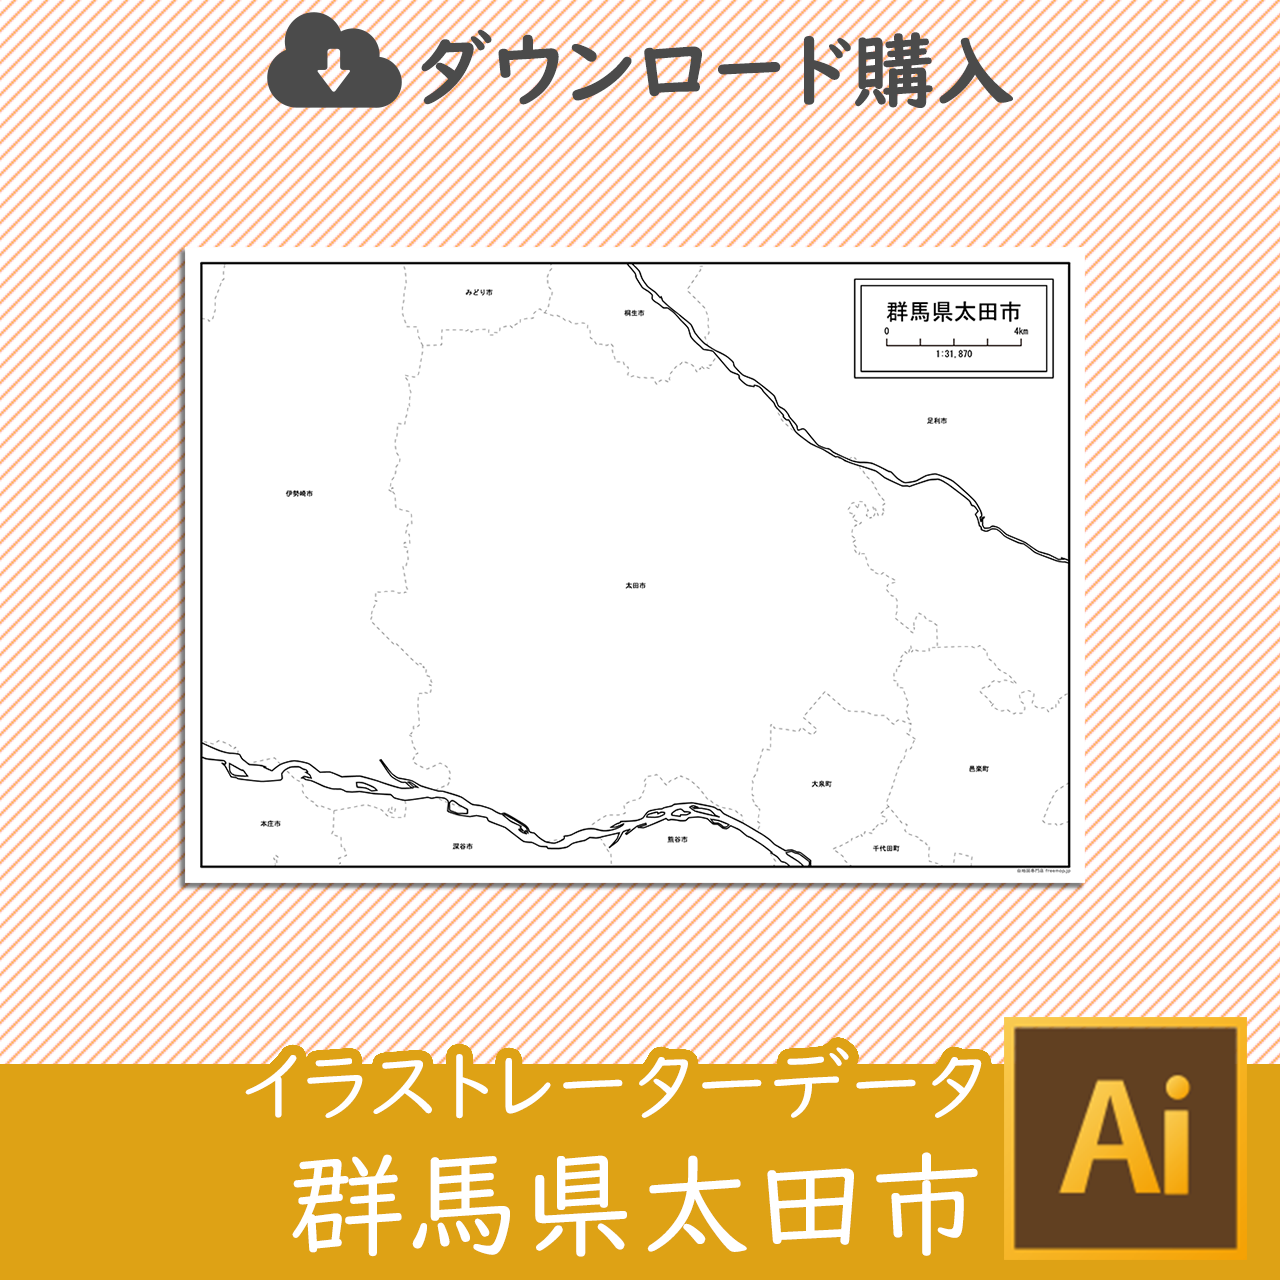 太田市のaiデータのサムネイル画像